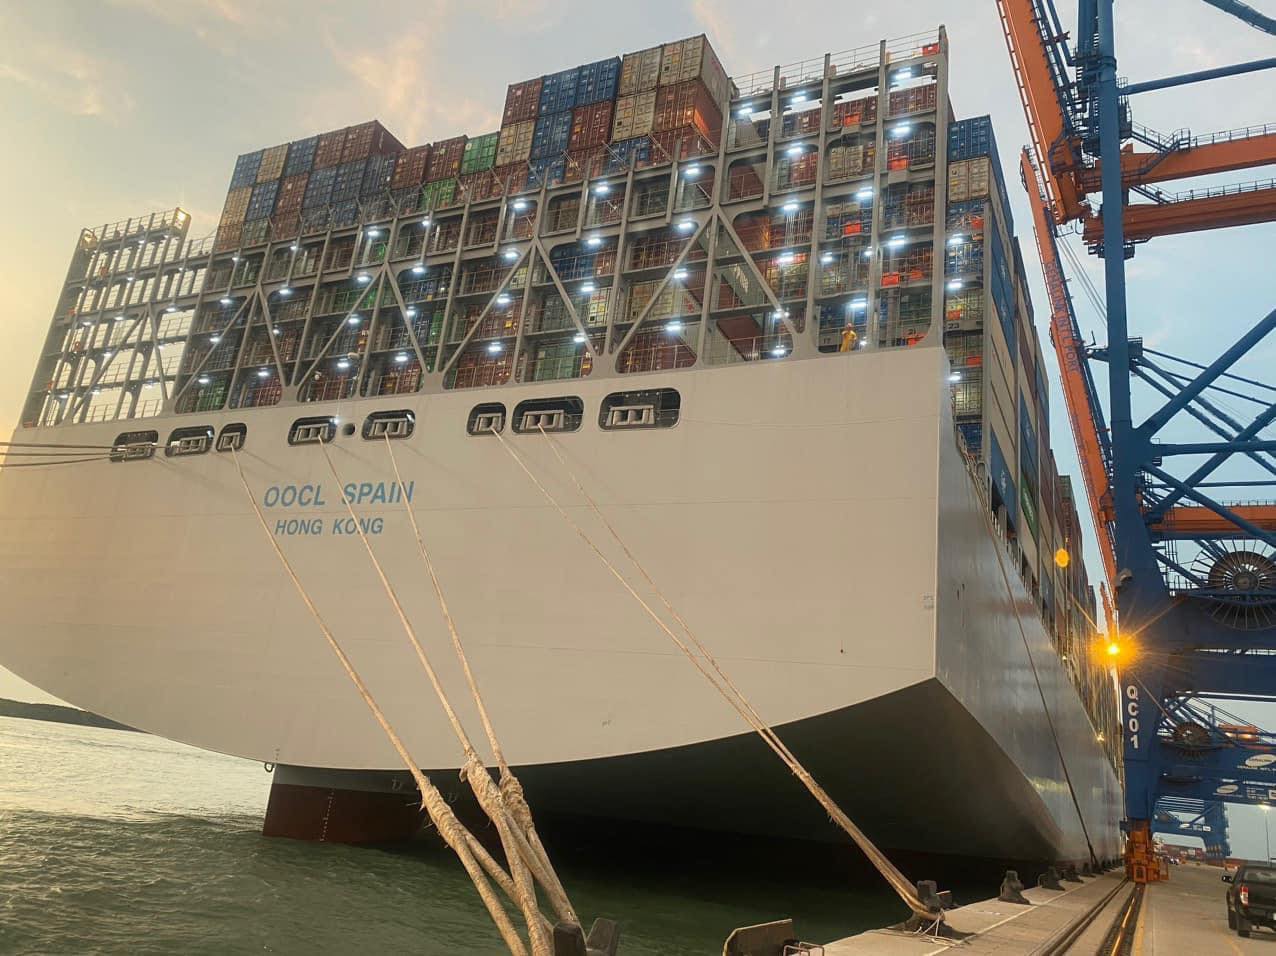 Cận cảnh siêu tàu container lớn nhất thế giới tại Bà Rịa - Vũng Tàu - Ảnh 7.